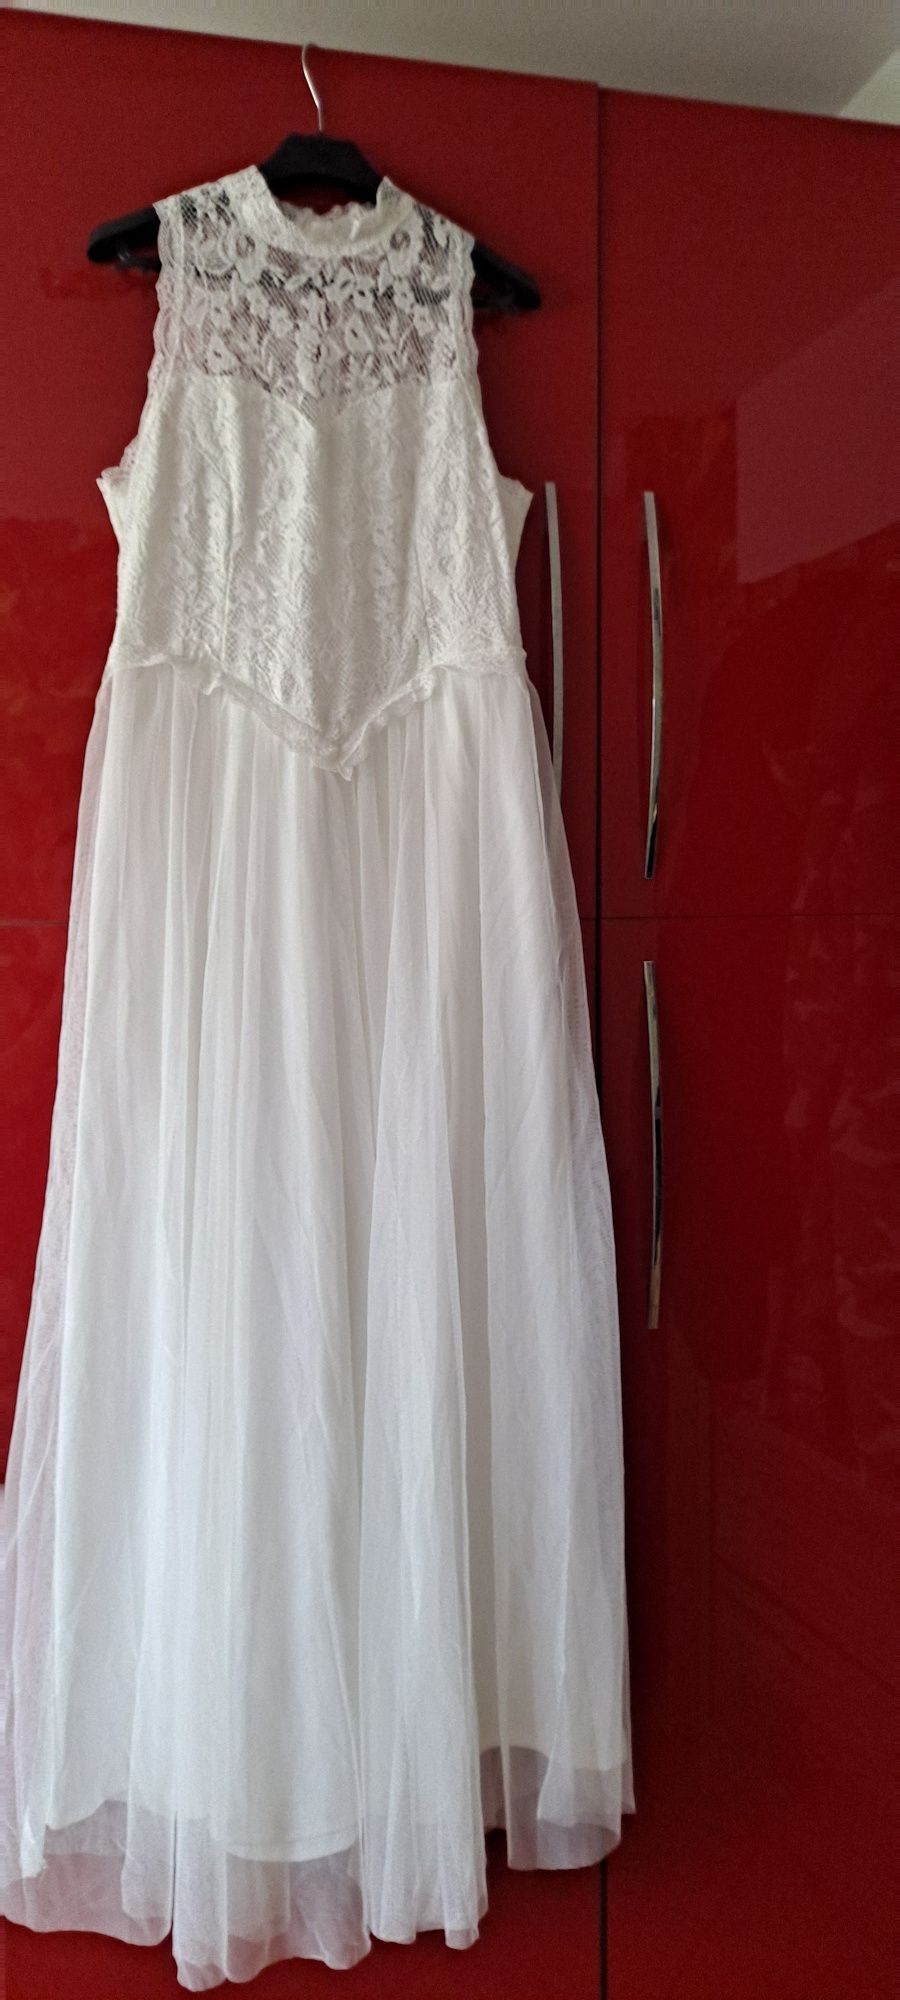 sukienka suknia ślubna wesele ślub przyjęcie bal 40 L 42 xl